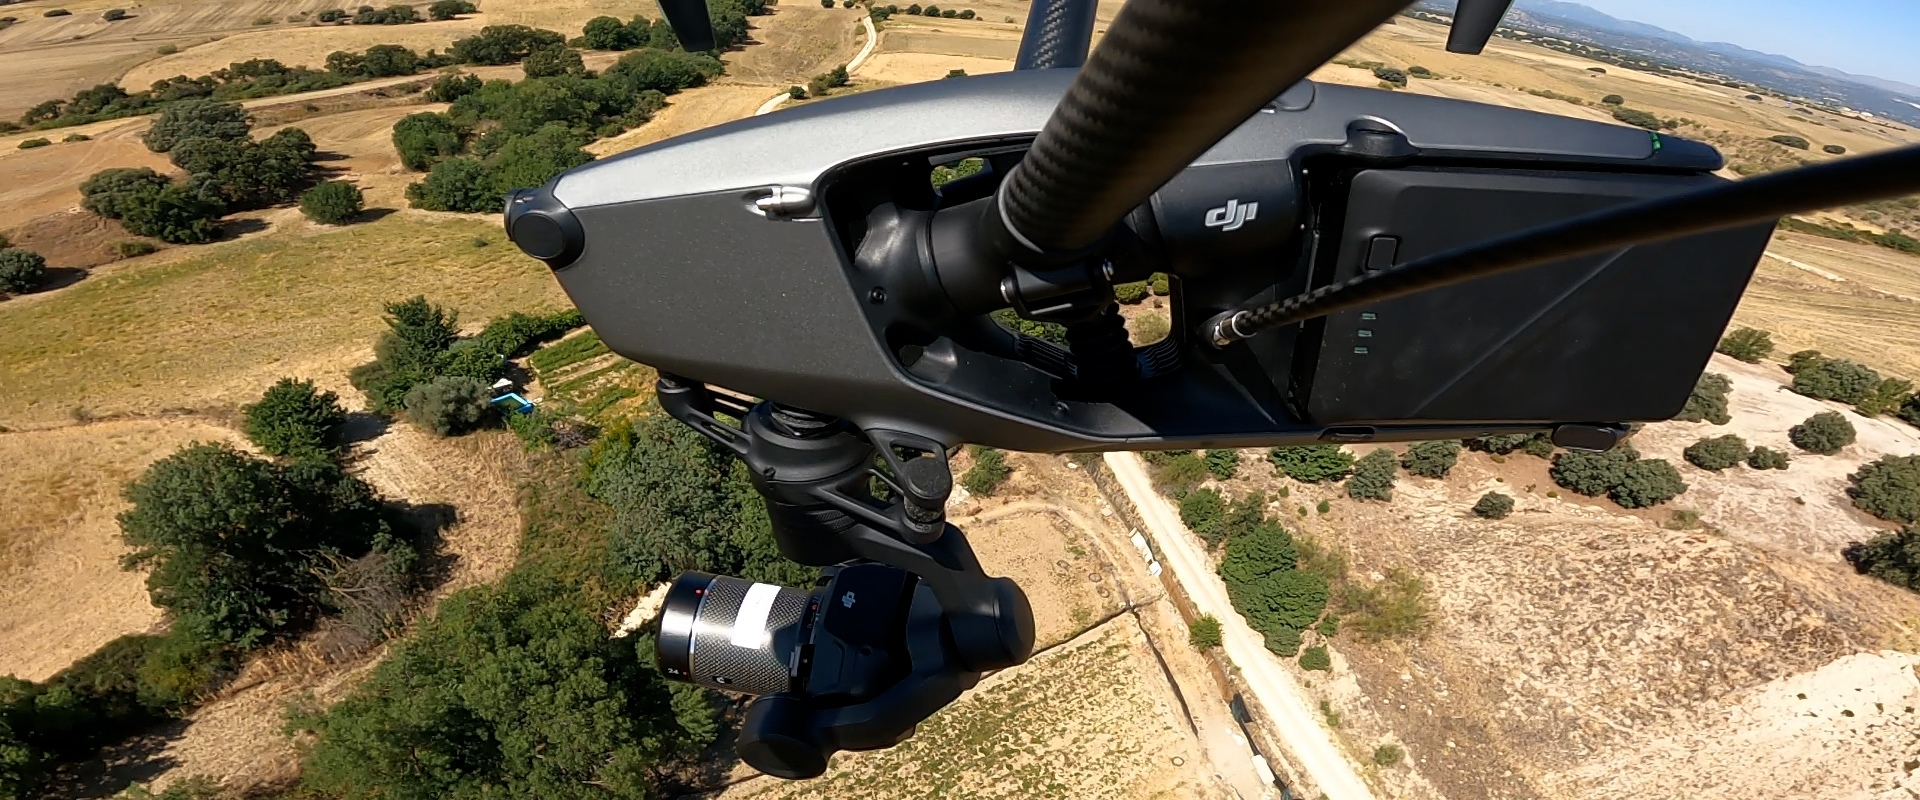 operadores drones audiovisual con camaras